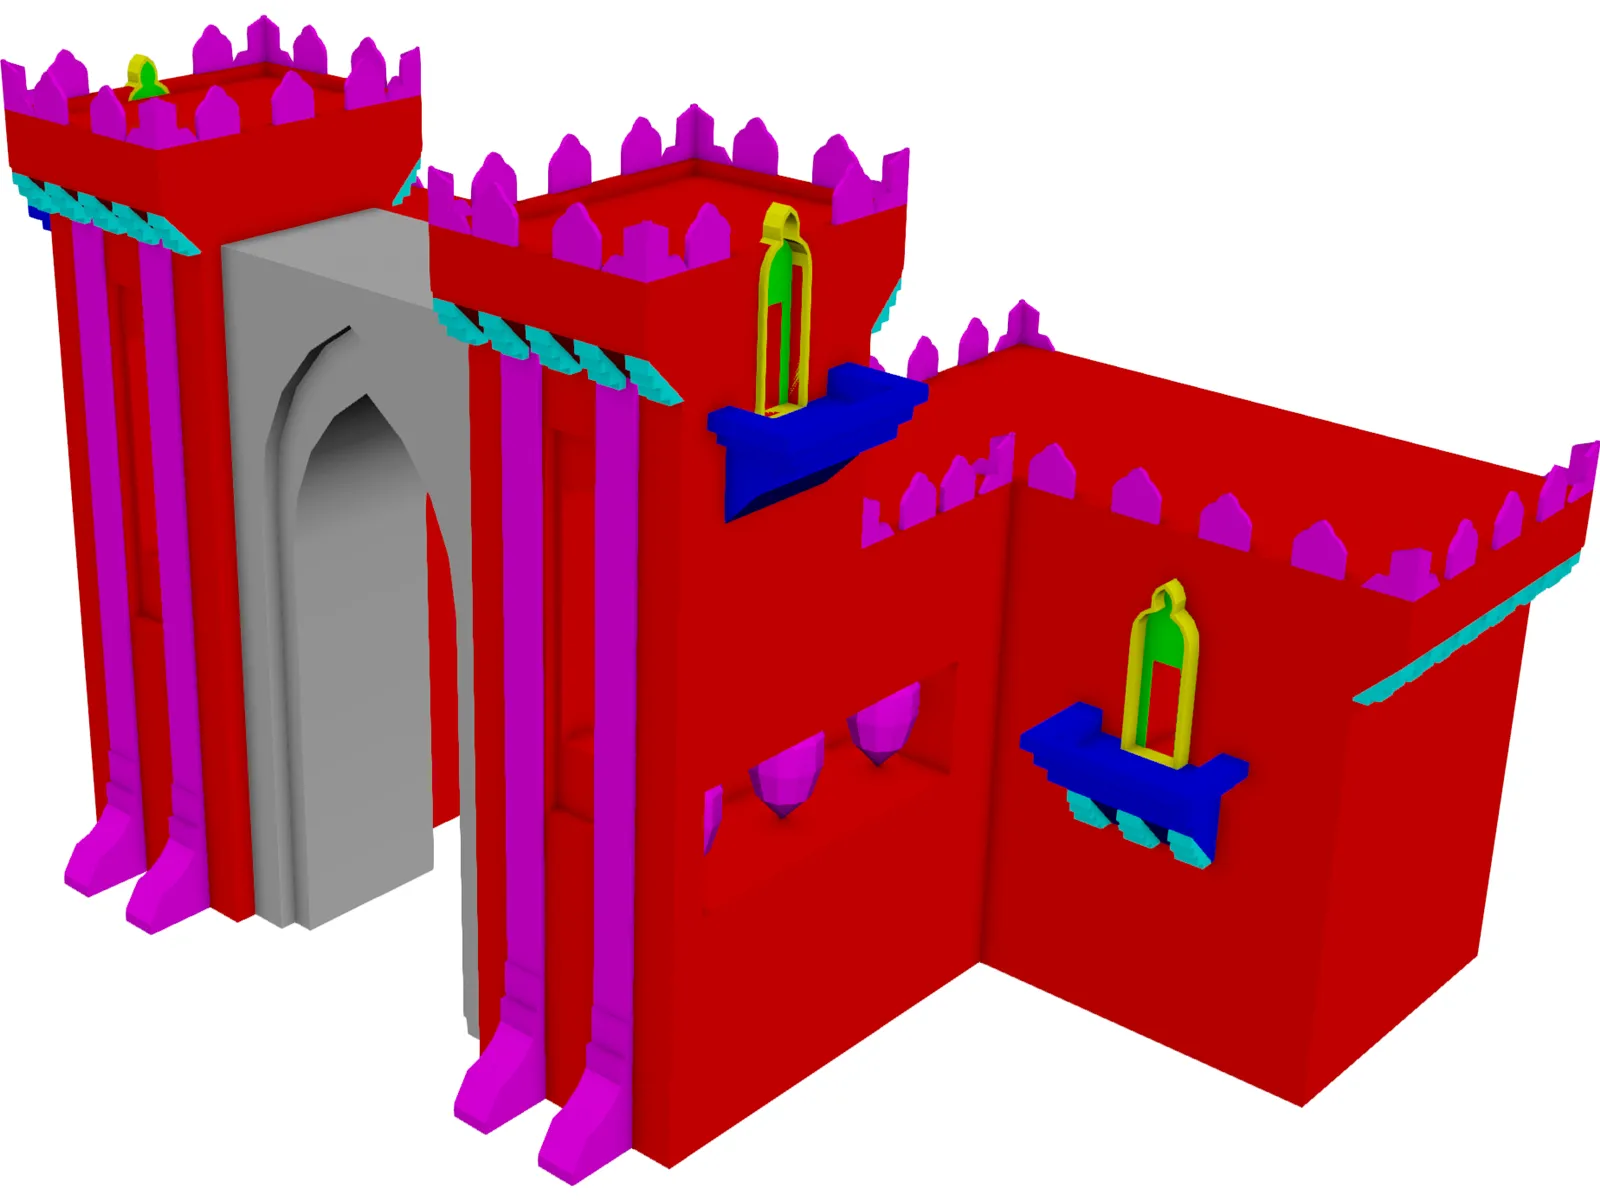 Castle Gate Front 3D Model